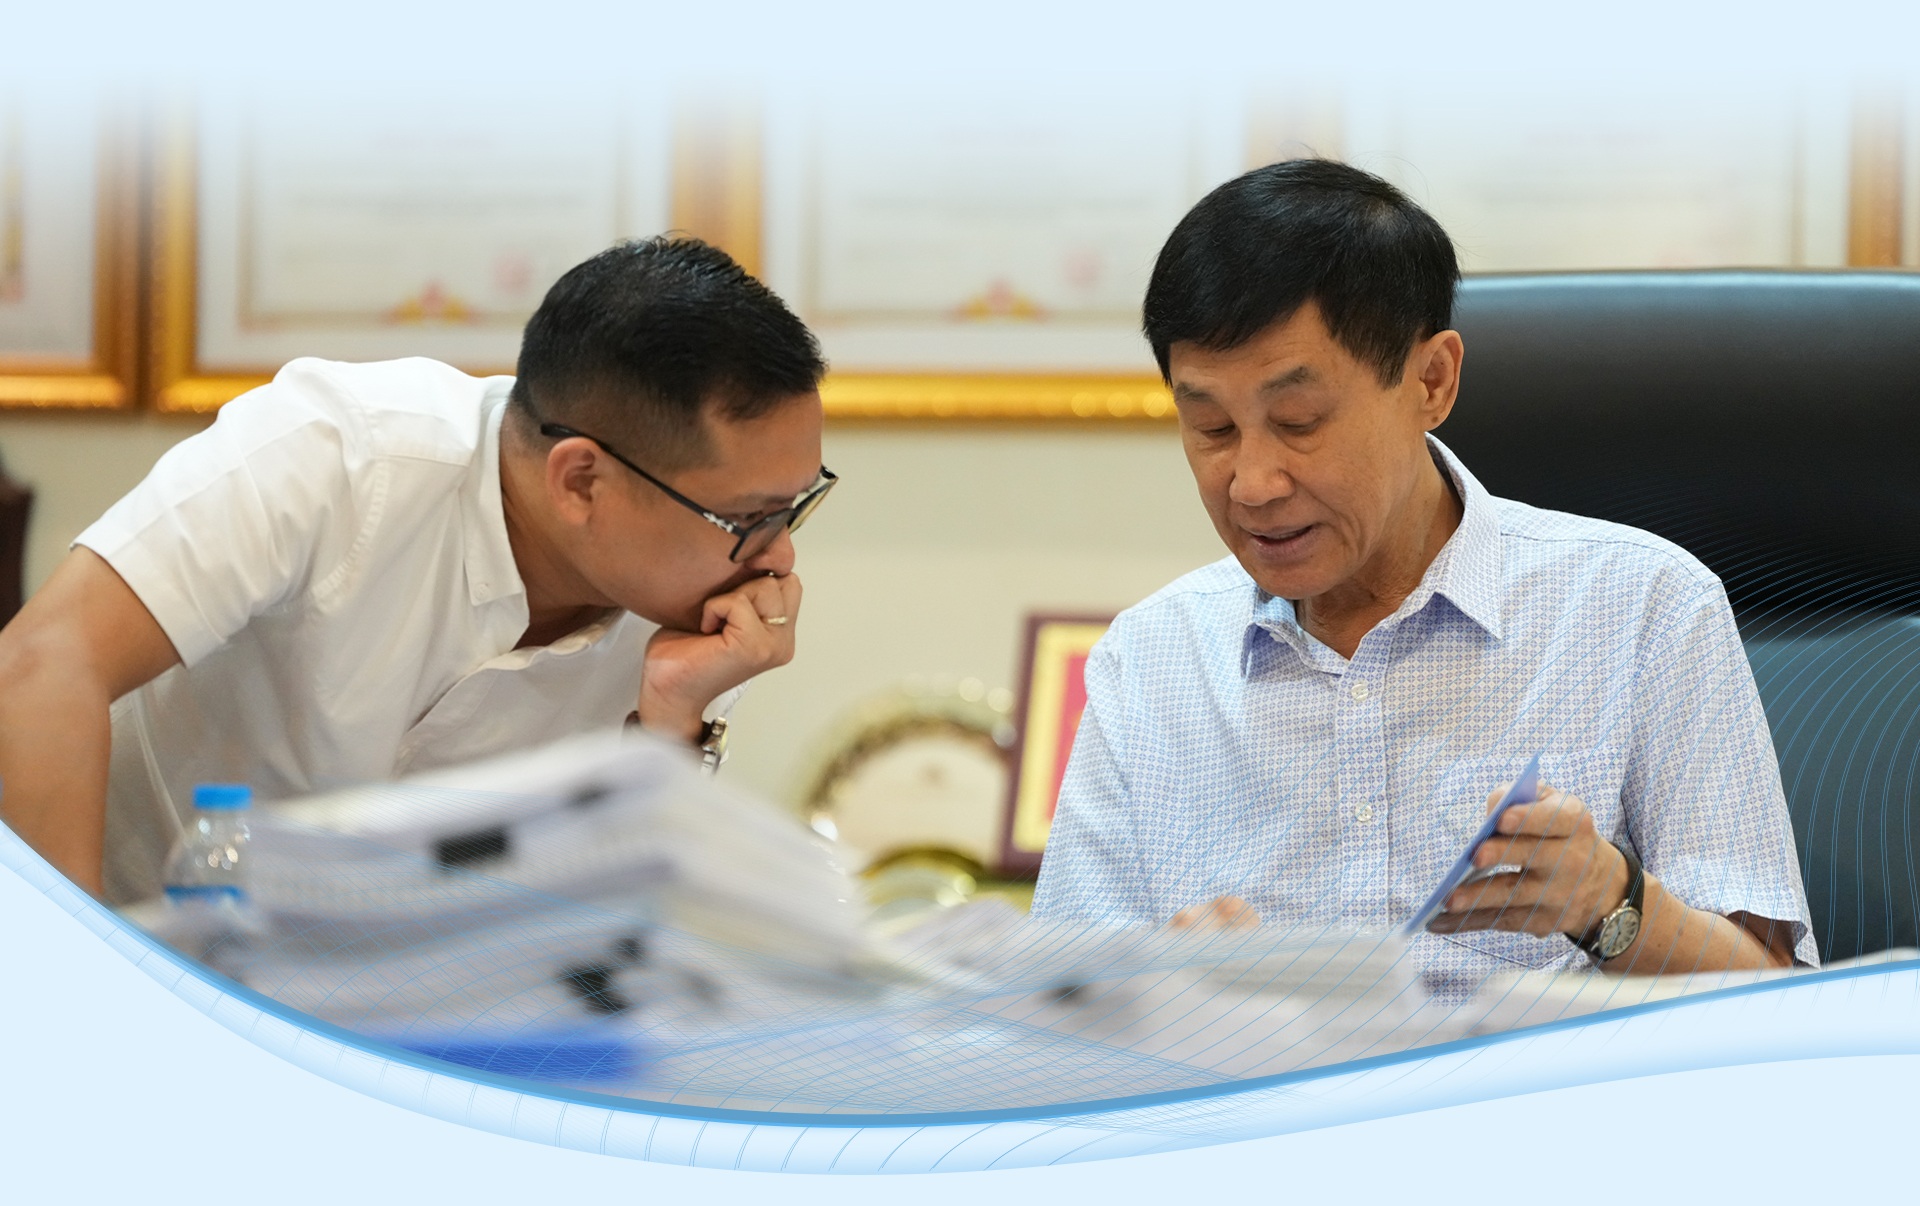 Cuộc gặp với cố Thủ tướng Phạm Văn Đồng thay đổi cuộc đời ông Johnathan Hạnh Nguyễn - 29